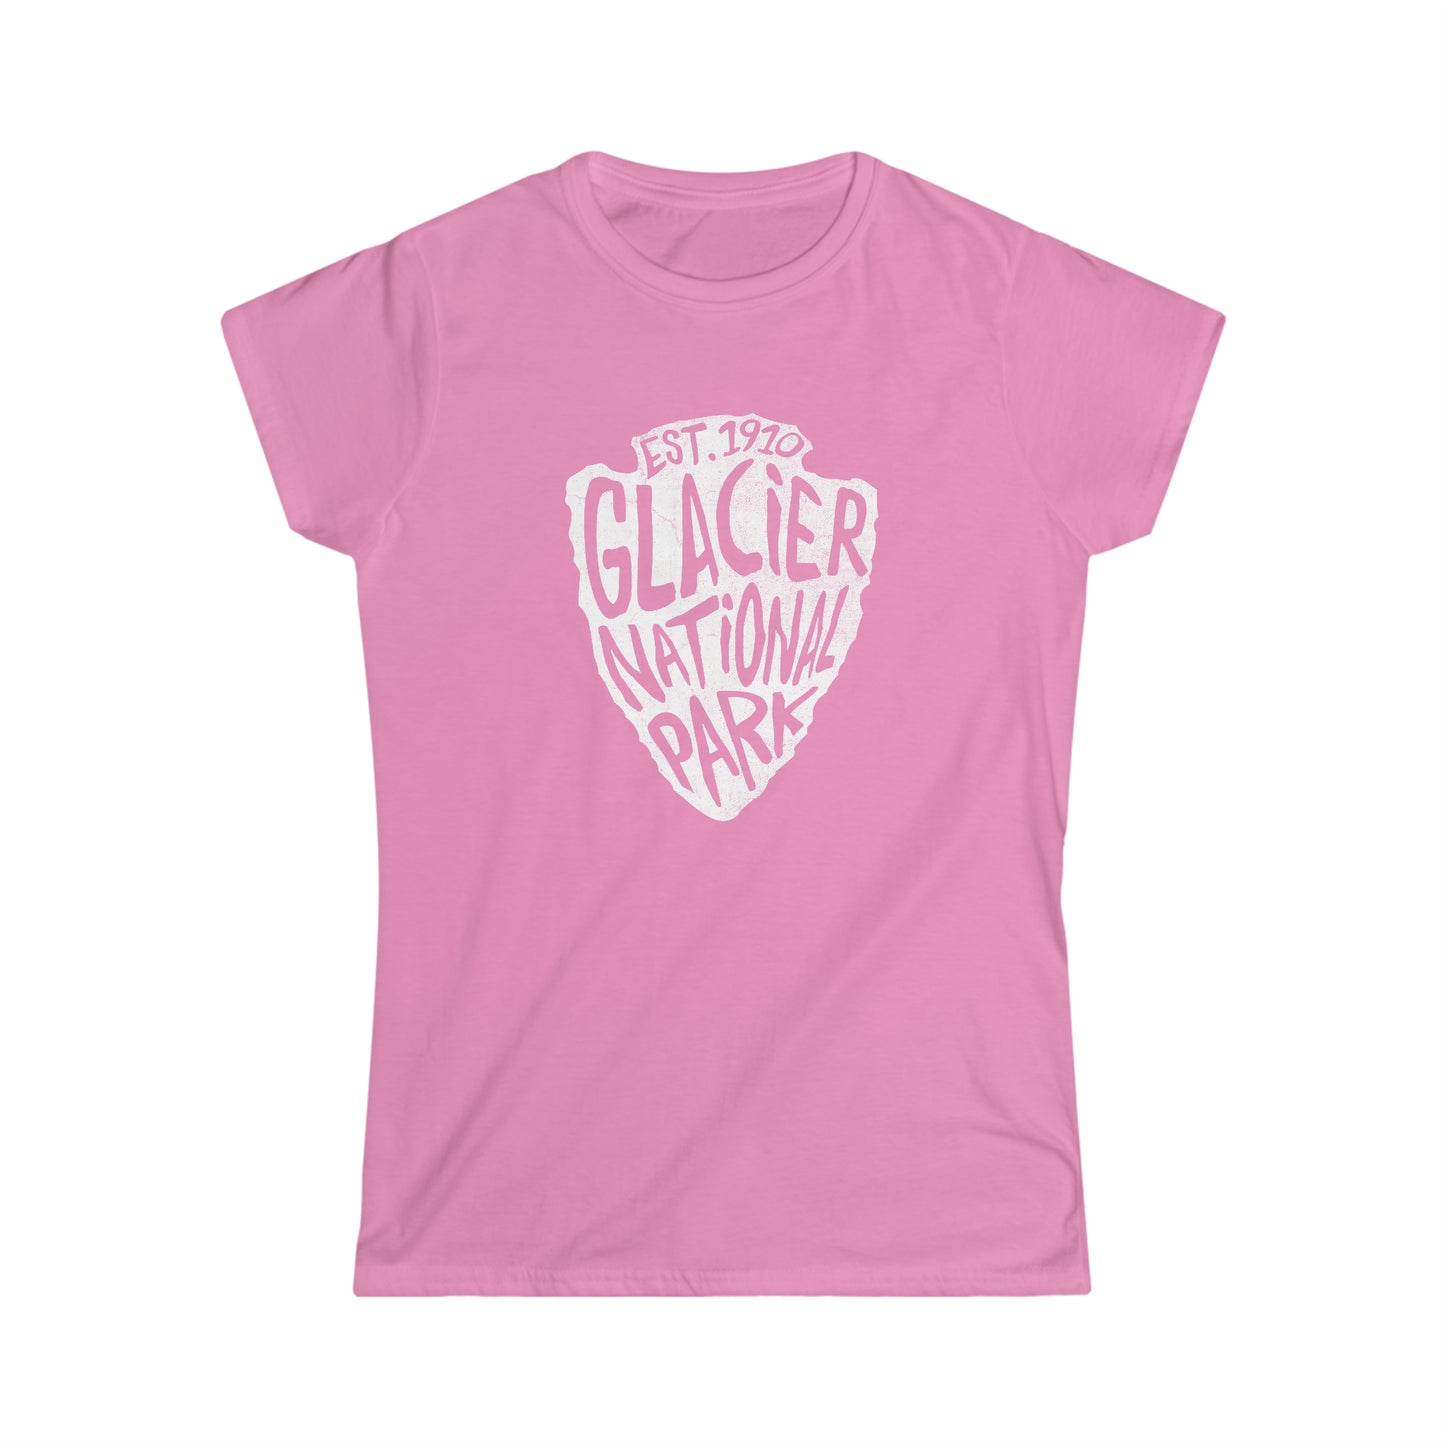 Glacier National Park Women's T-Shirt - Arrowhead Design